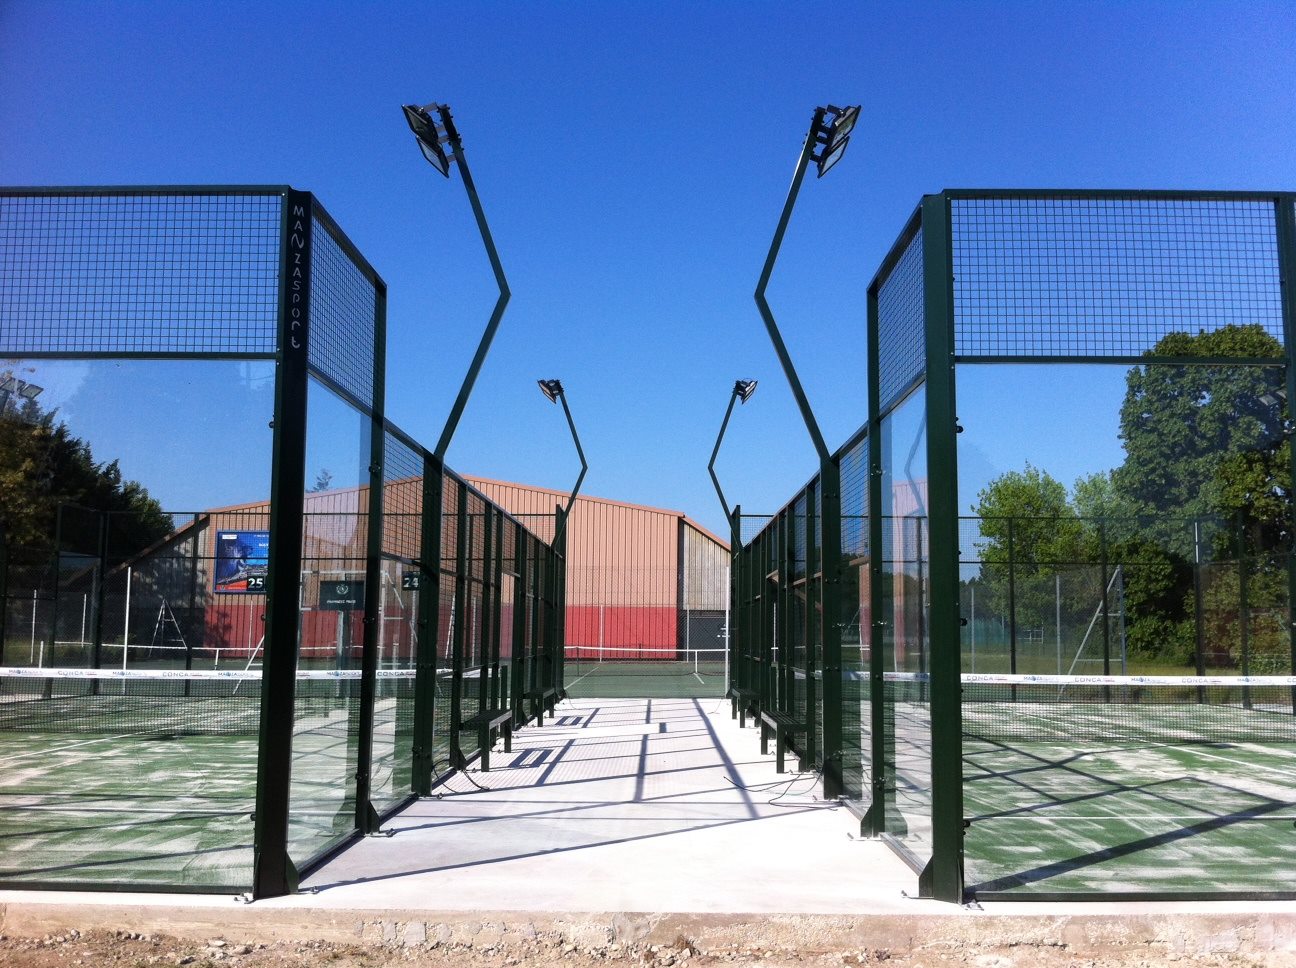 Tennis Club de Lyon ofrece pistas de pádel 2